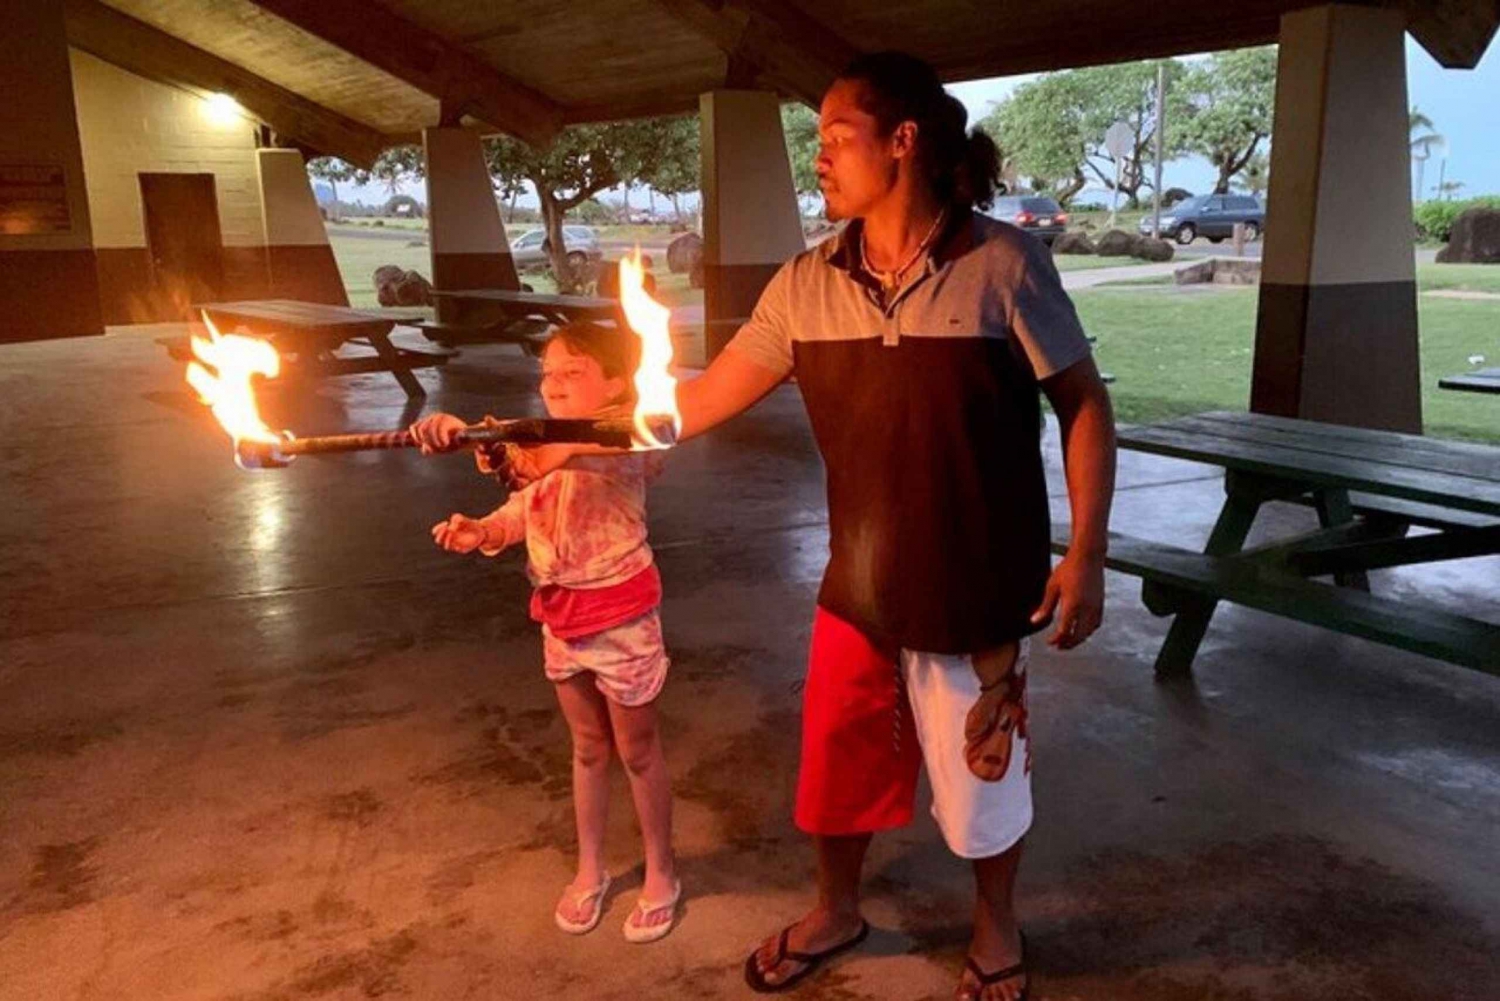 Kaua'i: Samoanisches FireKnife Erlebnis